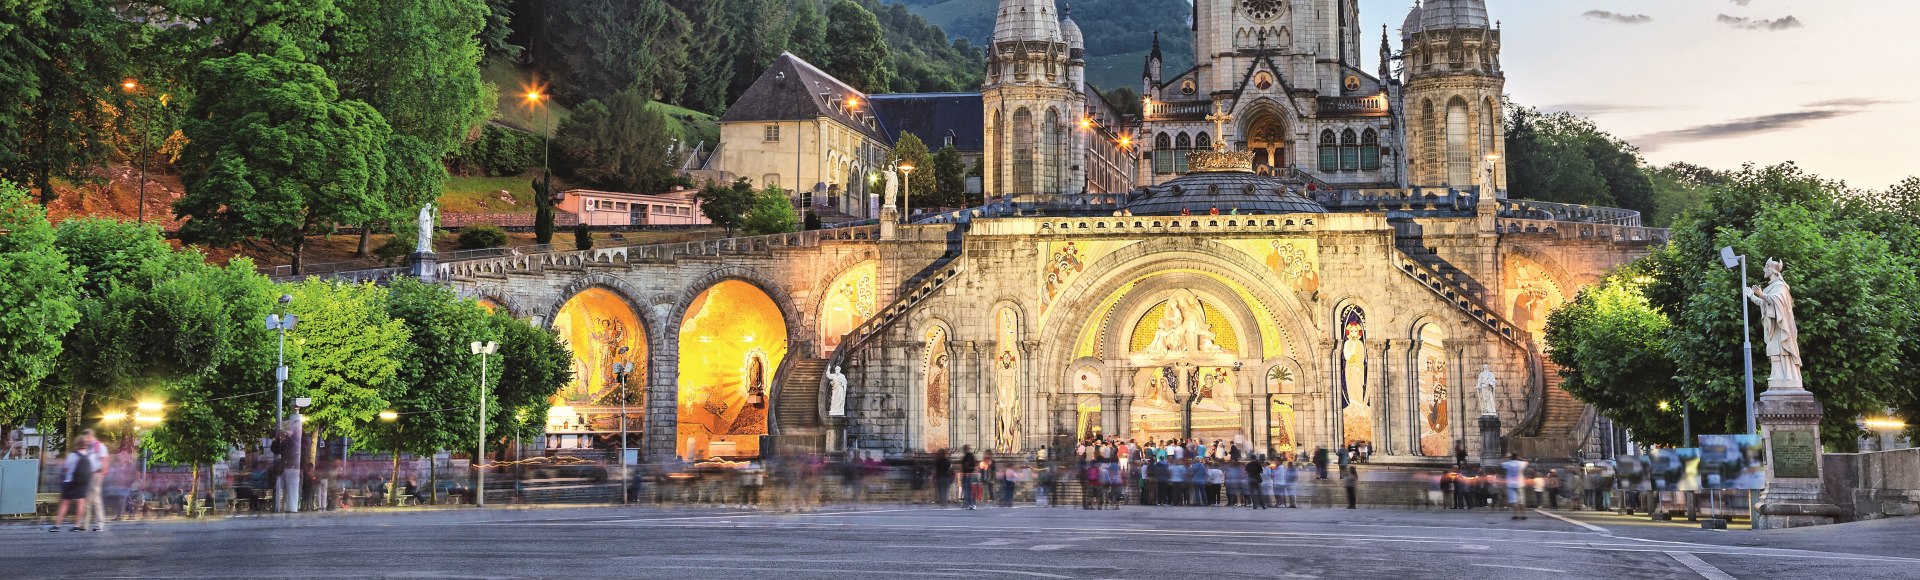 Blick auf die Rosenkranzbasilika in Lourdes, Frankreich, © Sergey Dzyuba – stock.adobe.com